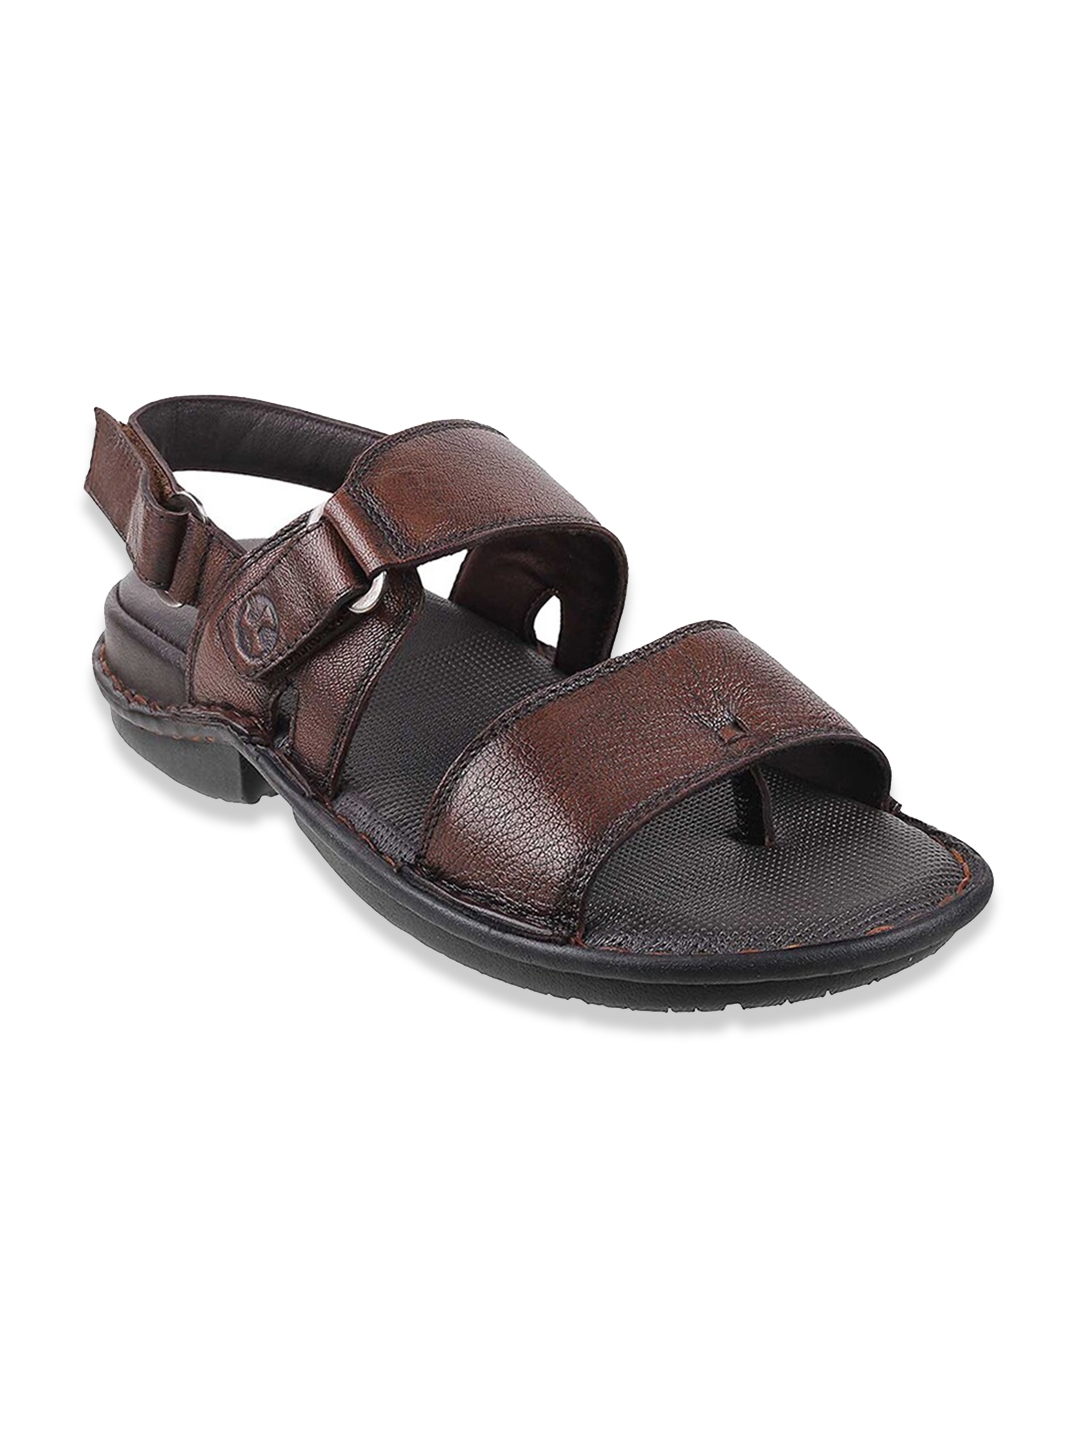 Buy Mochi Men Brown Leather Comfort Sandals - Sandals for Men 18089330 ...